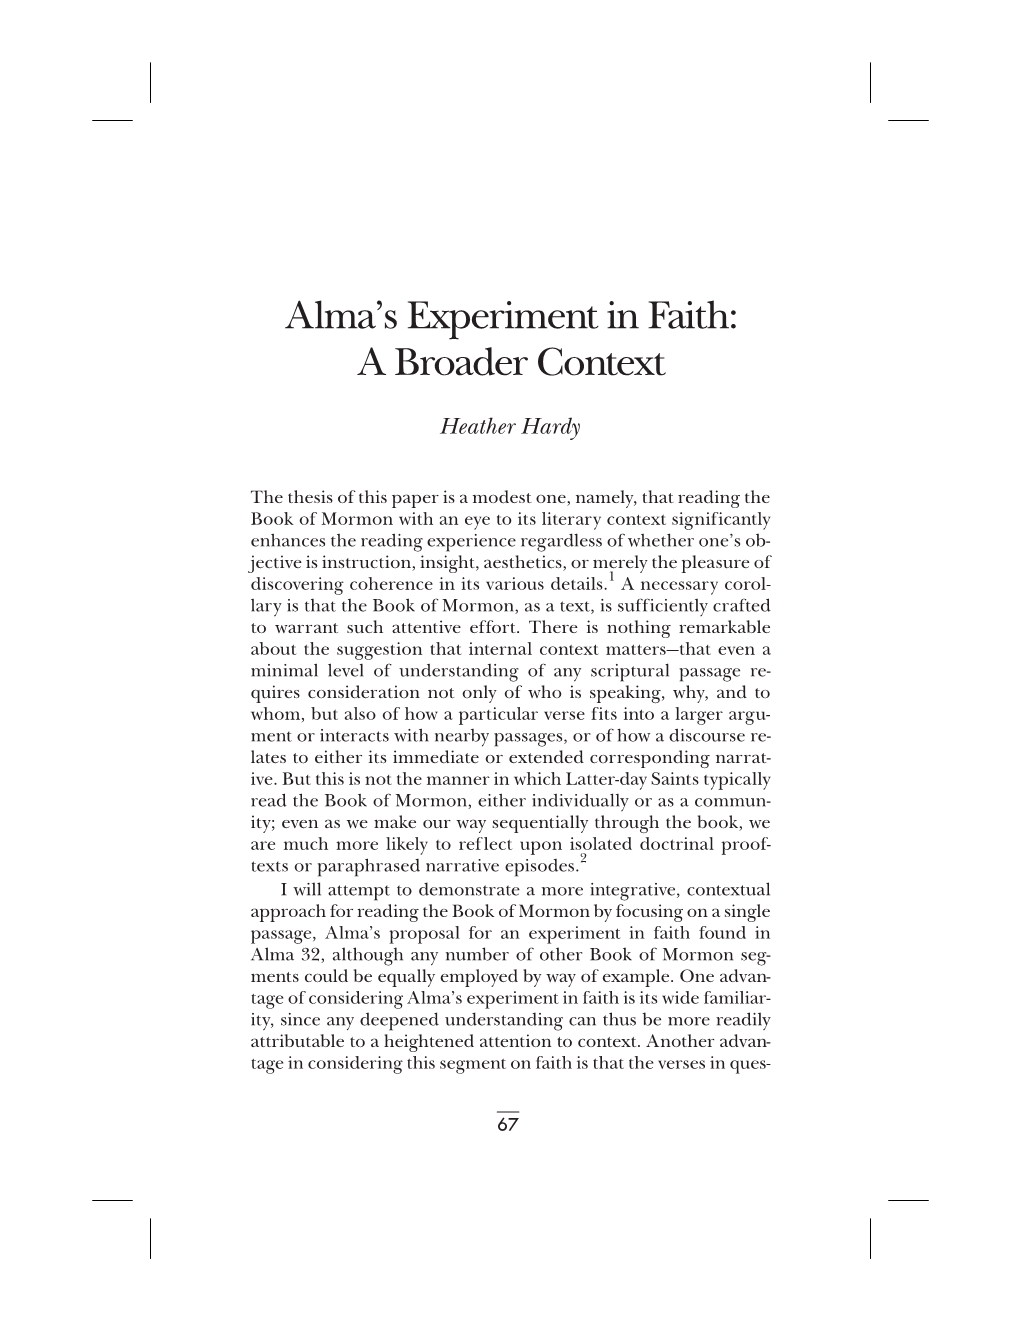 Alma's Experiment in Faith: a Broader Context